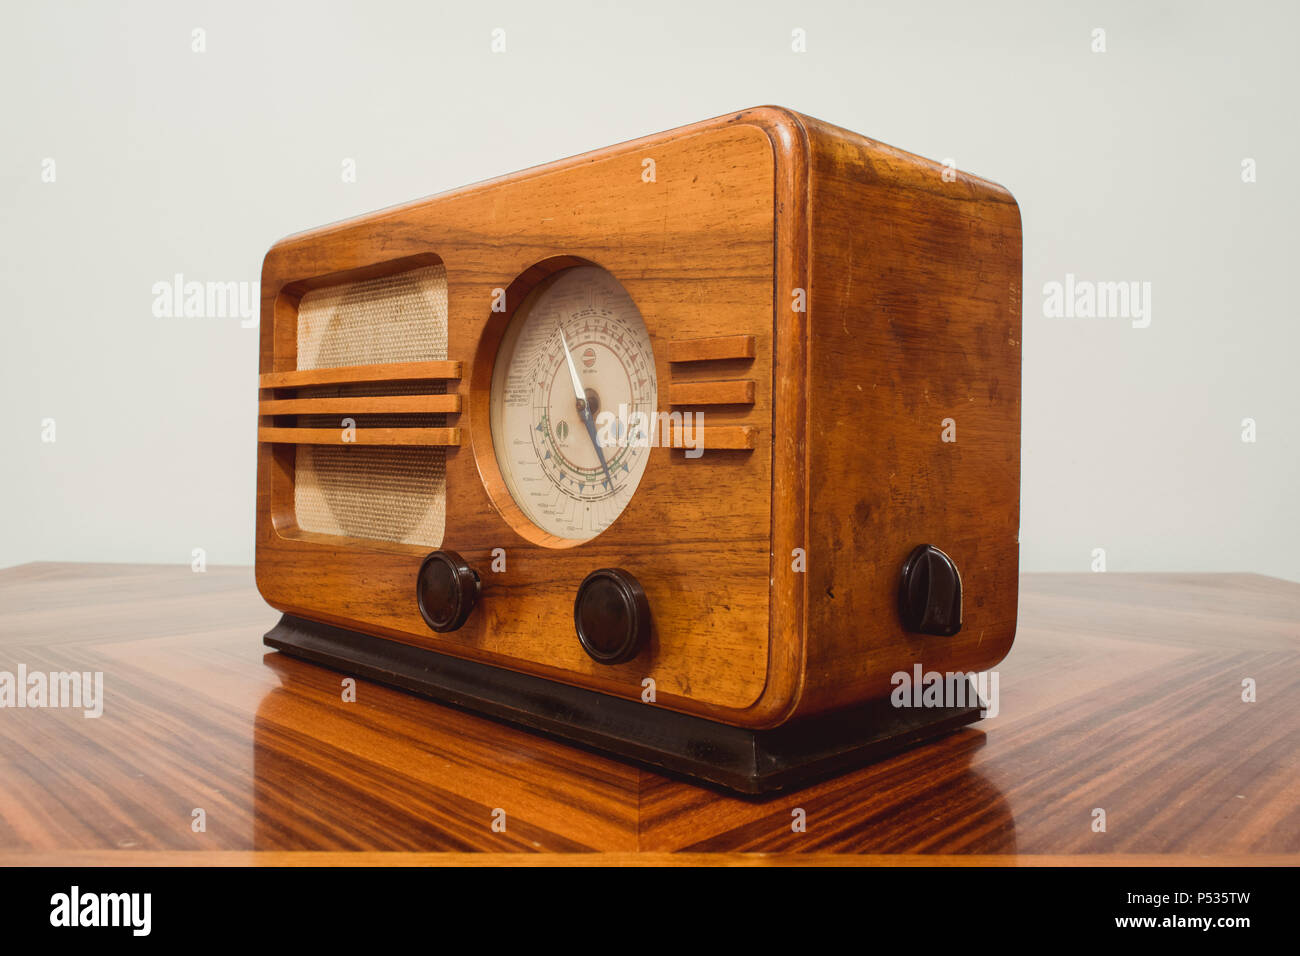 https://c8.alamy.com/comp/P535TW/old-wooden-radio-on-table-vintage-retro-style-P535TW.jpg